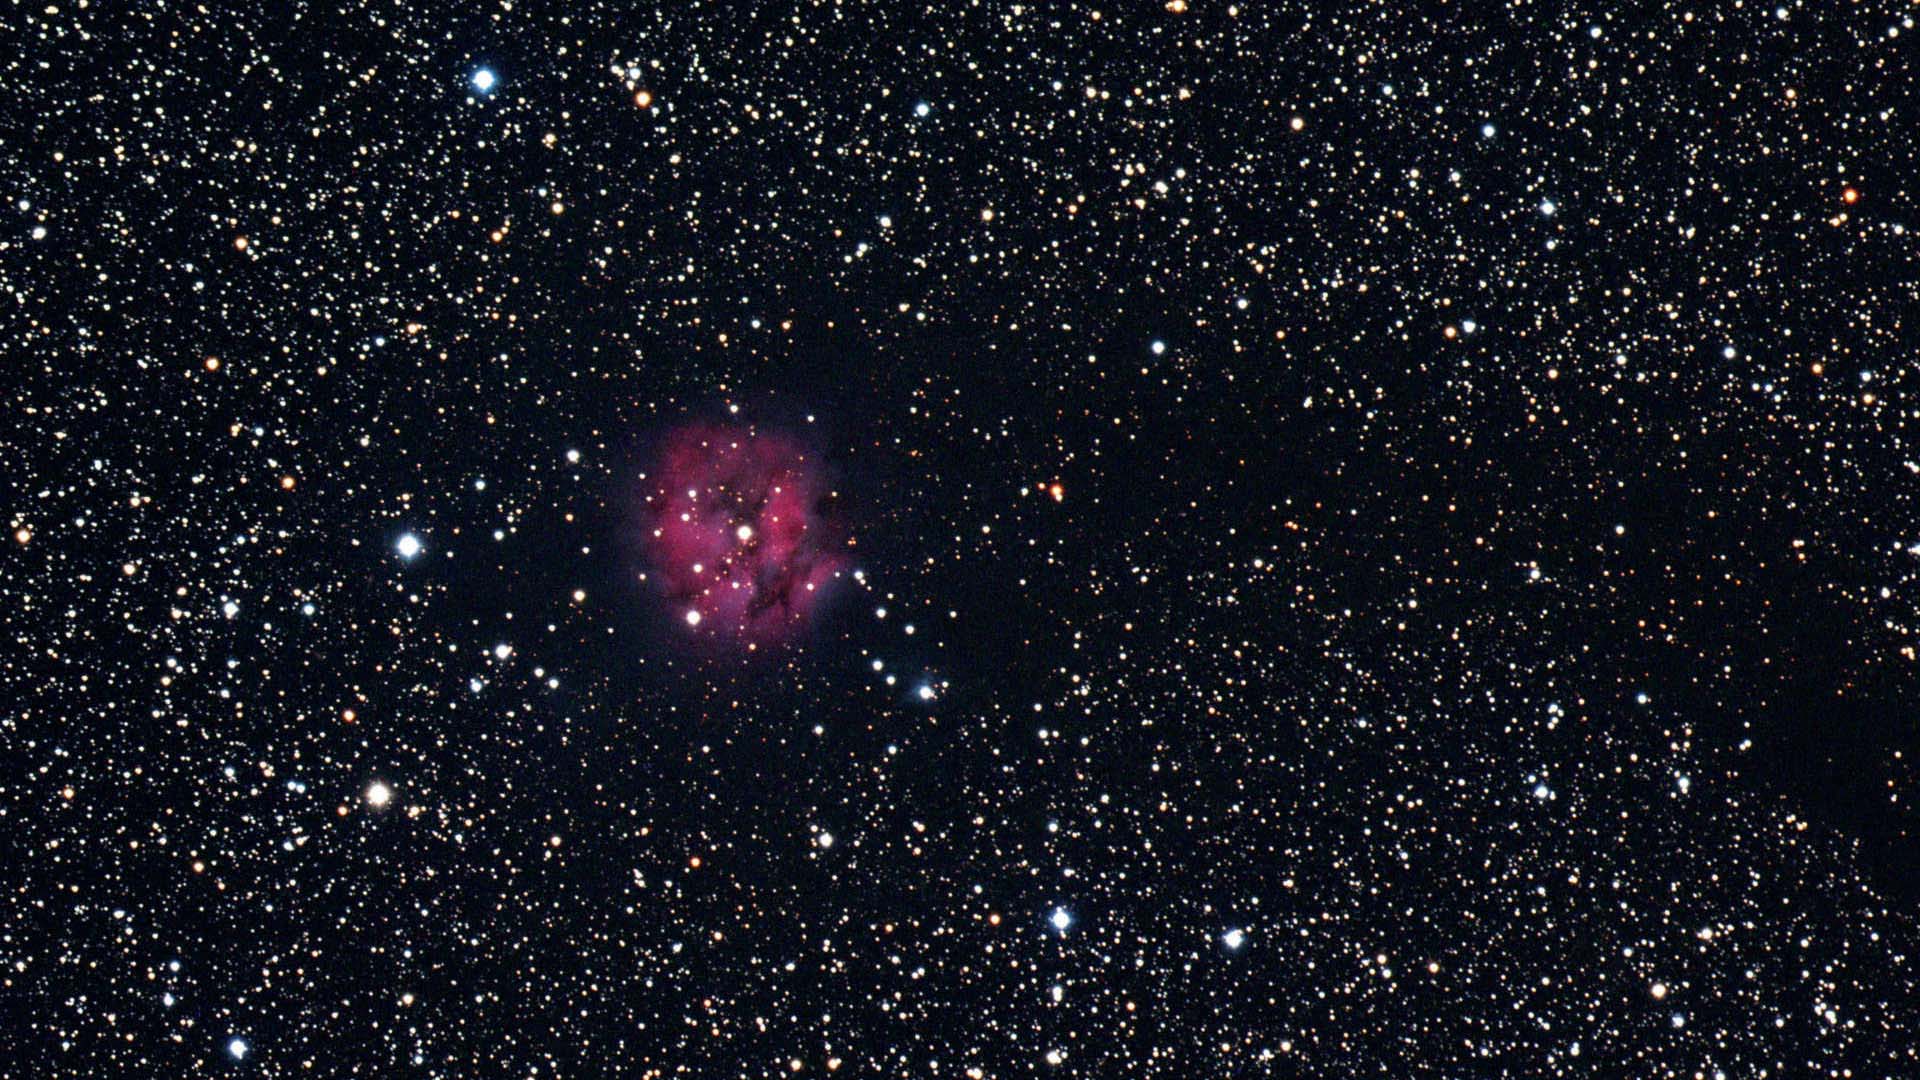 Fotografi av Kokongnebulosan (IC5146) i stjärnbilden Svanen och dess framställning: Bilden är ett resultat av att man har kombinerat separata summabilder i olika färgkanaler till en fullfärgsbild. U. Dittler